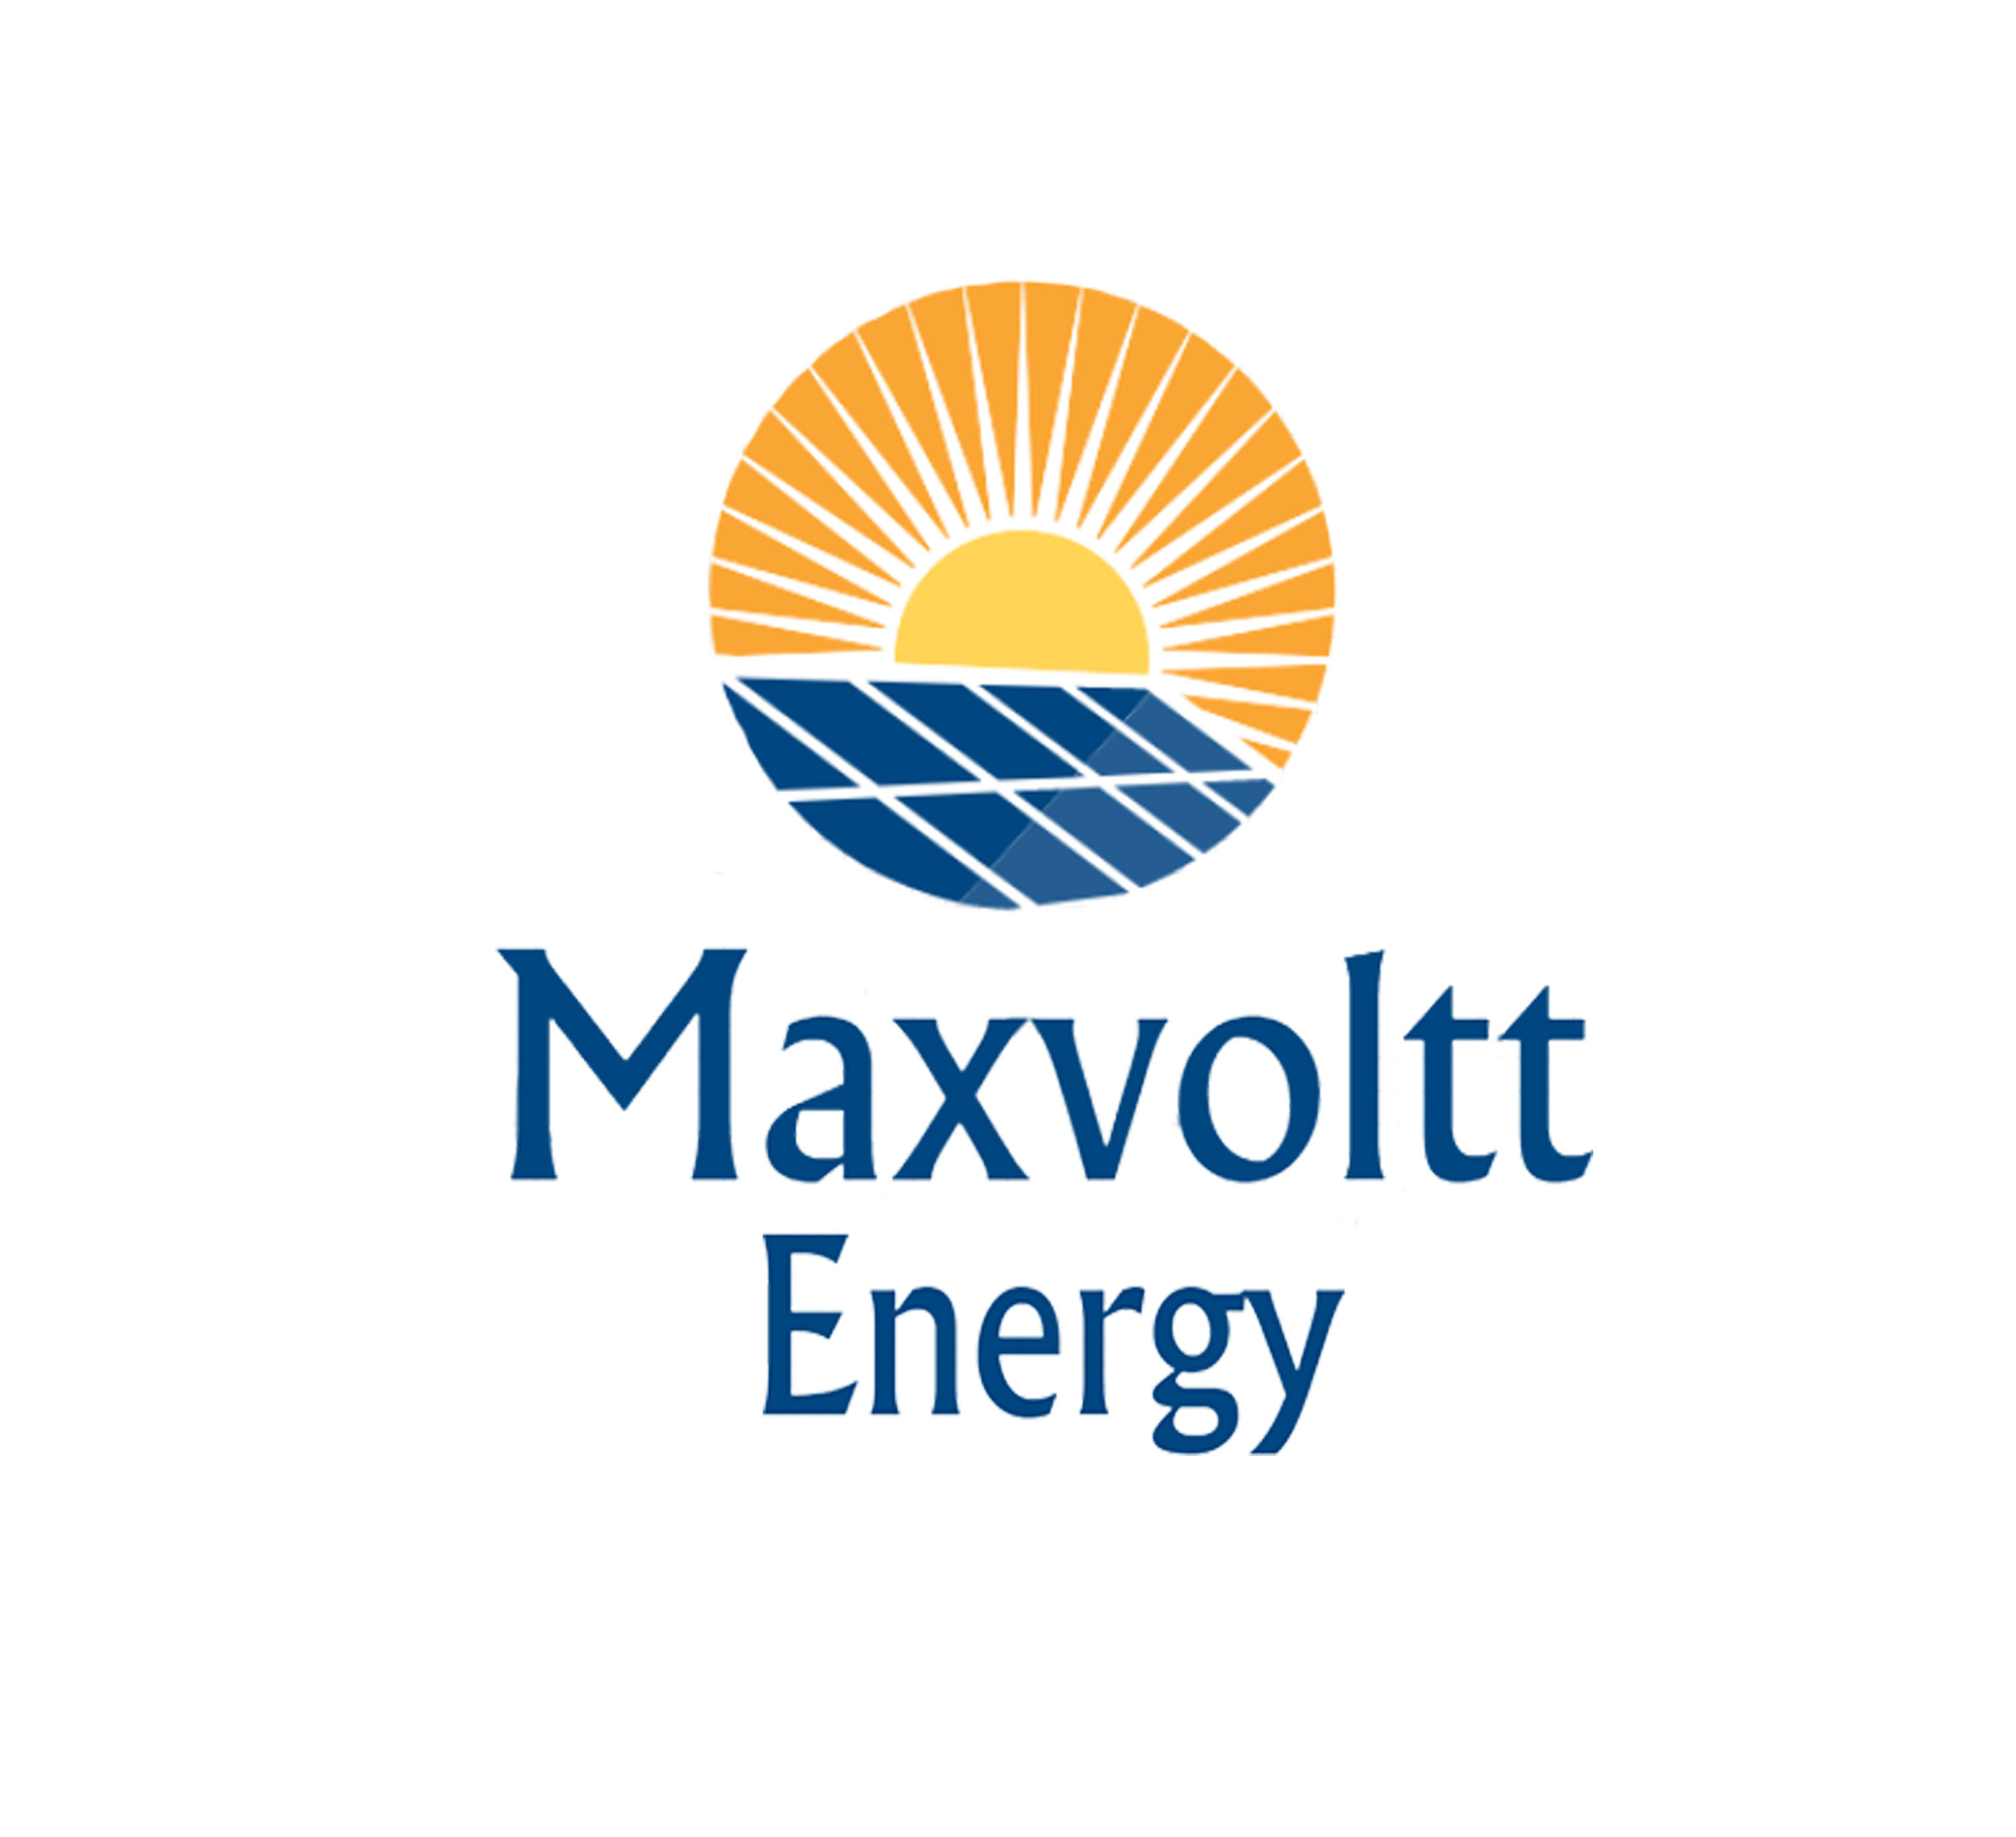 Maxvoltt Energy